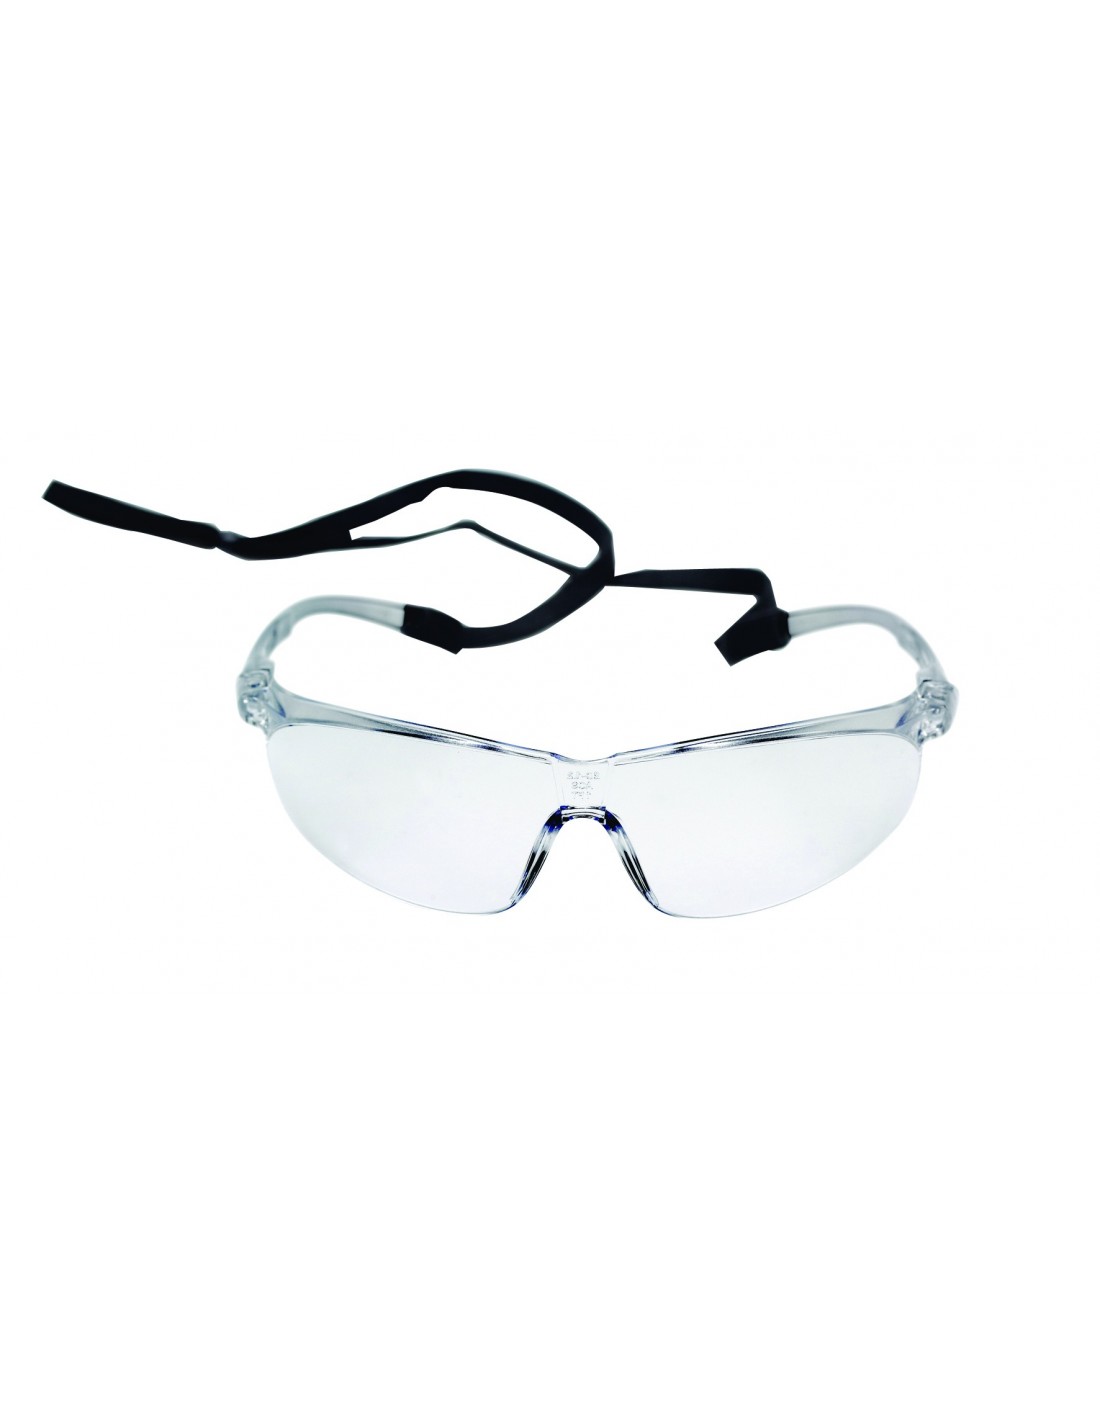 Lunette de sécurité OX pour port avec lunette de prescription par 3M.